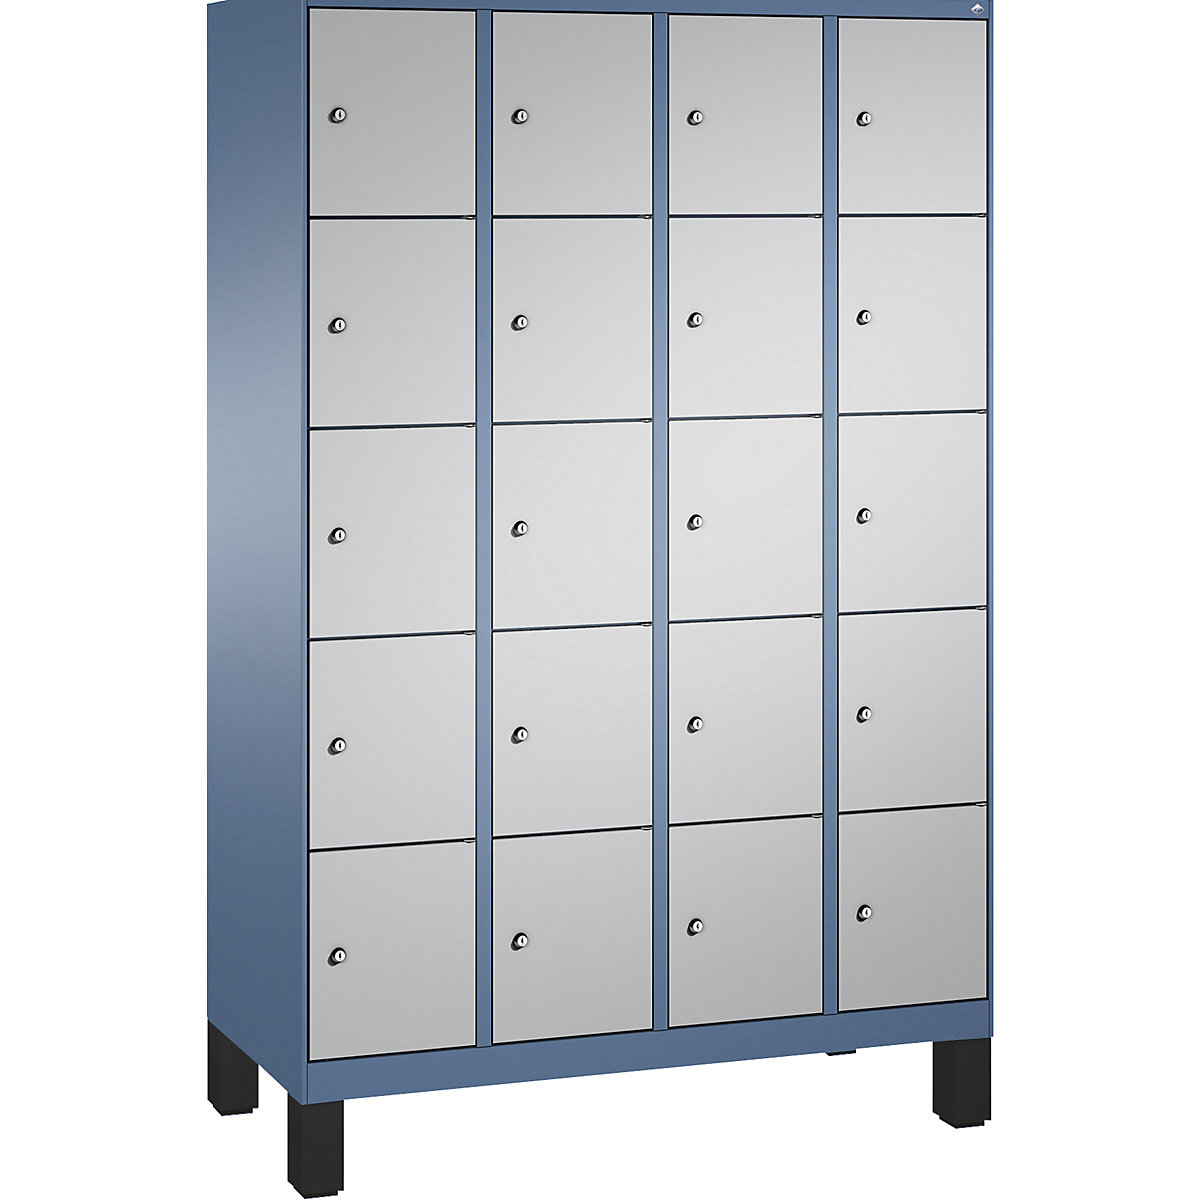 Armoire à casiers sur pieds EVOLO – C+P, 4 compartiments, 5 casiers chacun, largeur compartiments 300 mm, bleu distant / aluminium-5